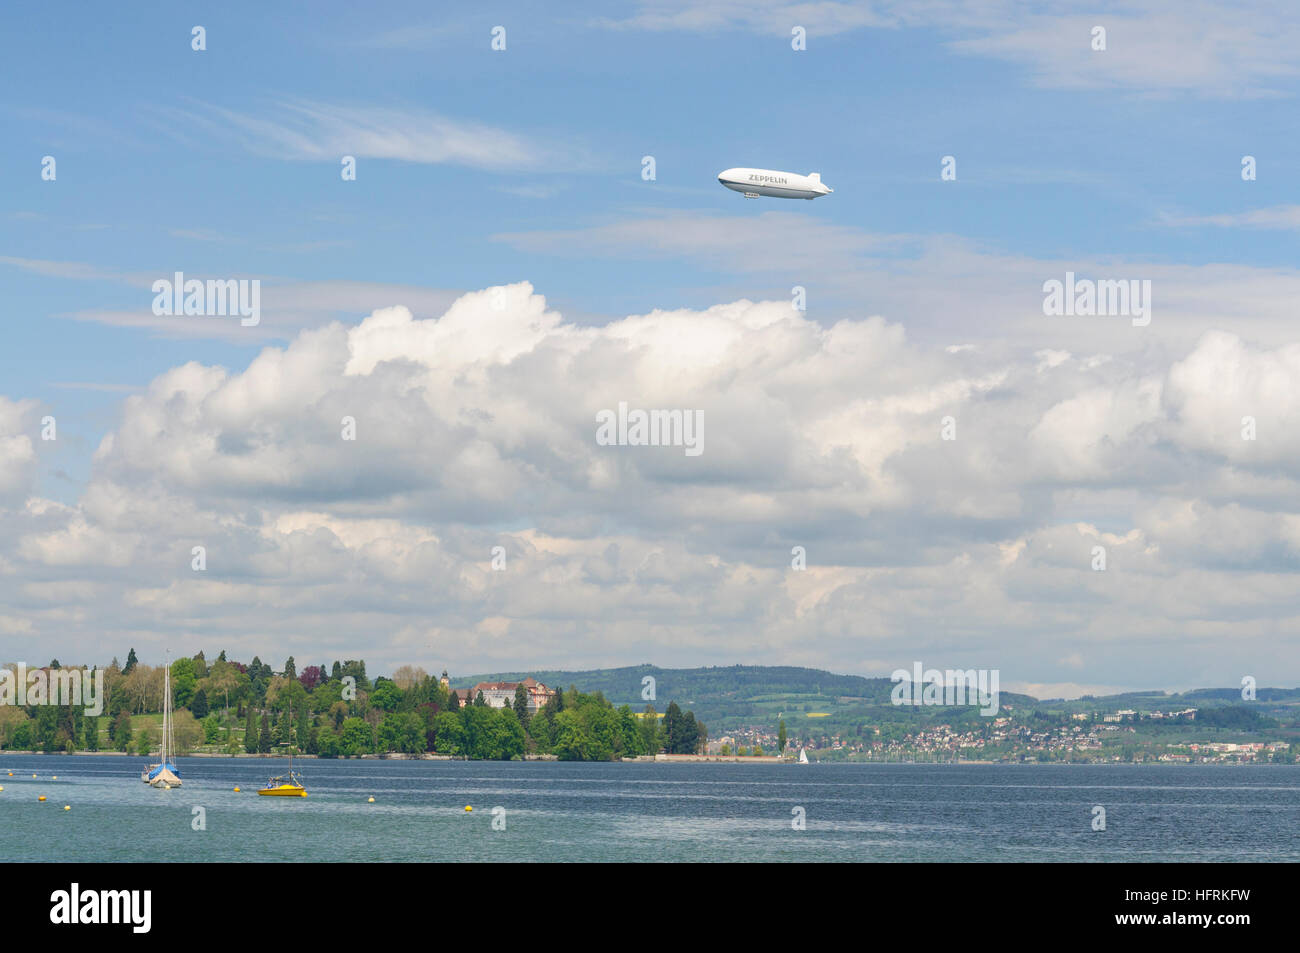 Costanza, costanza: Zeppelin NT su l'isola di Mainau, Bodensee, Lago di Costanza, Baden-Württemberg, Germania Foto Stock